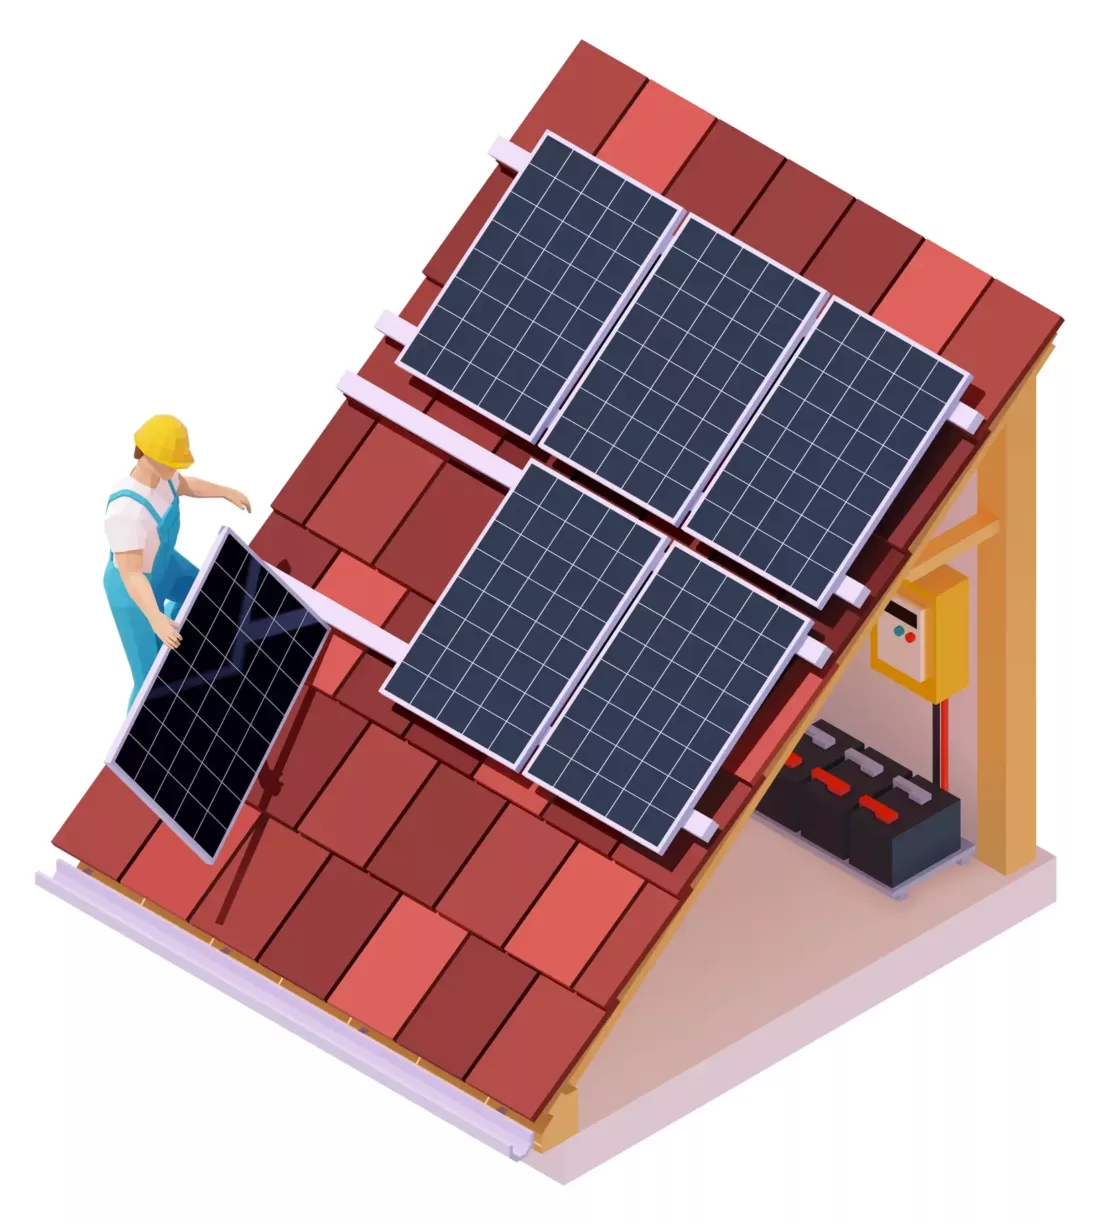 Solar Panel Installation Vector